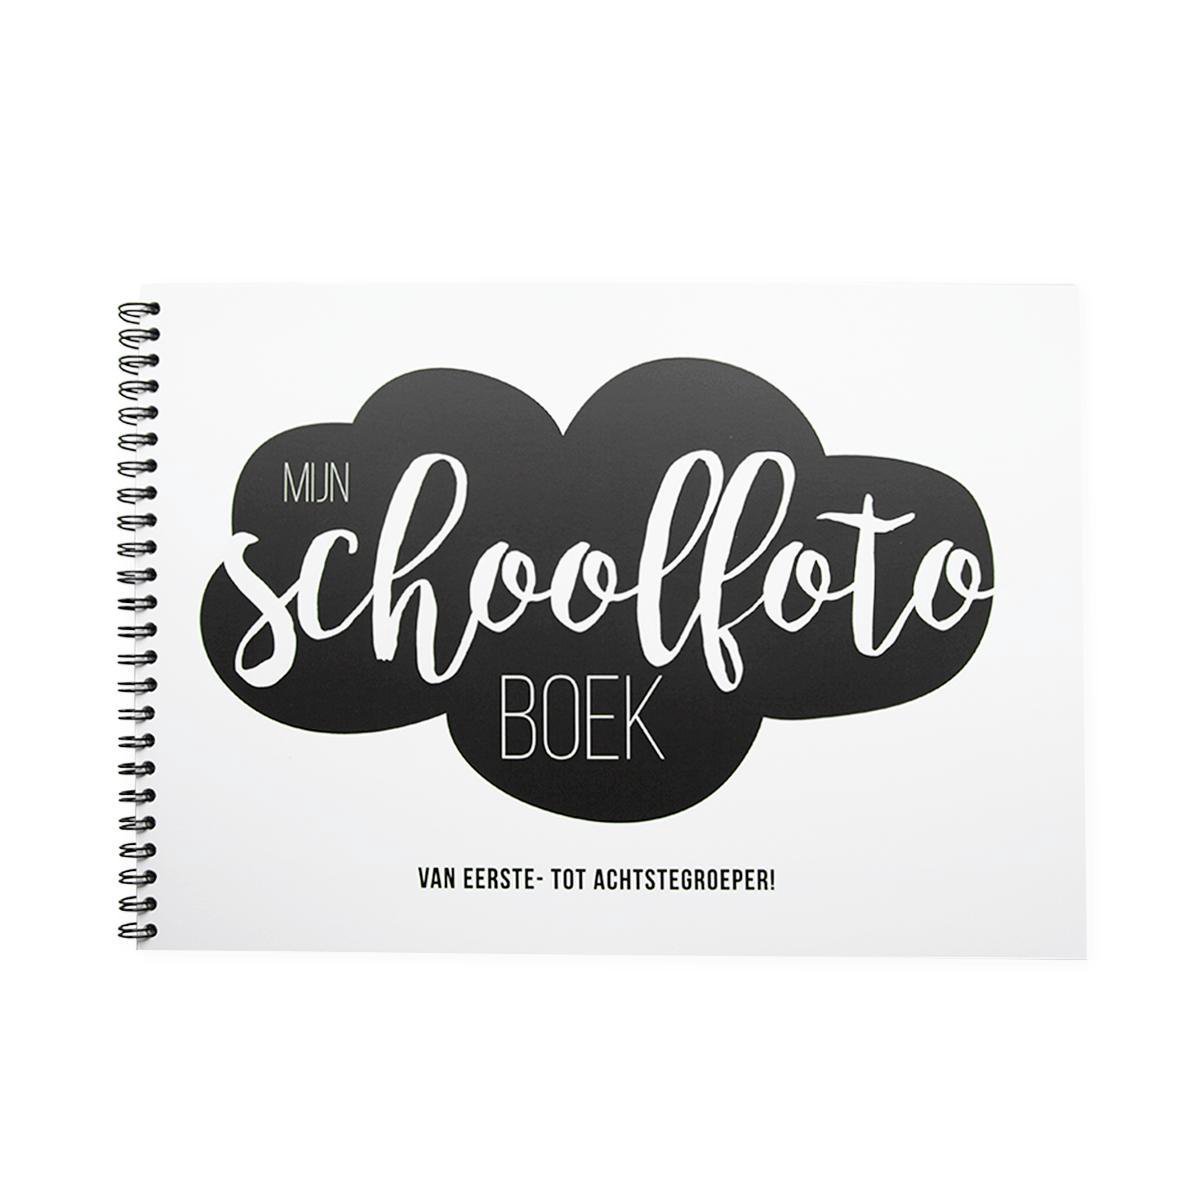 Schoolfotoboek -  Softcover - Mijn schoolfotoboek - invulboek - zwart/wit - ringband - Studio Mamengo